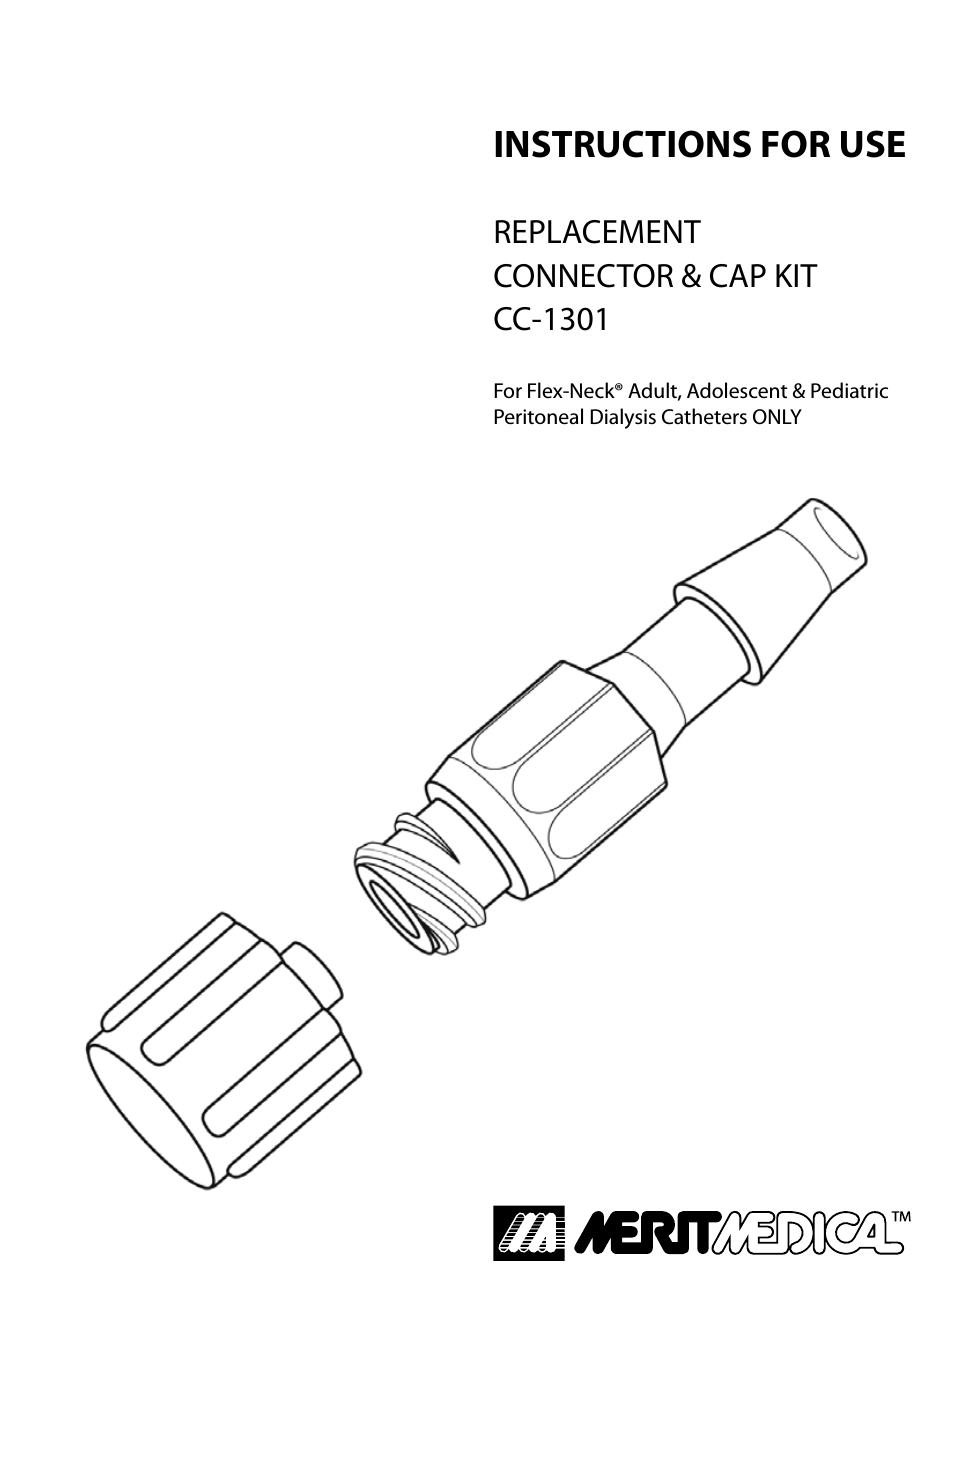 Plastic Connector & CAP KIT CC-1301